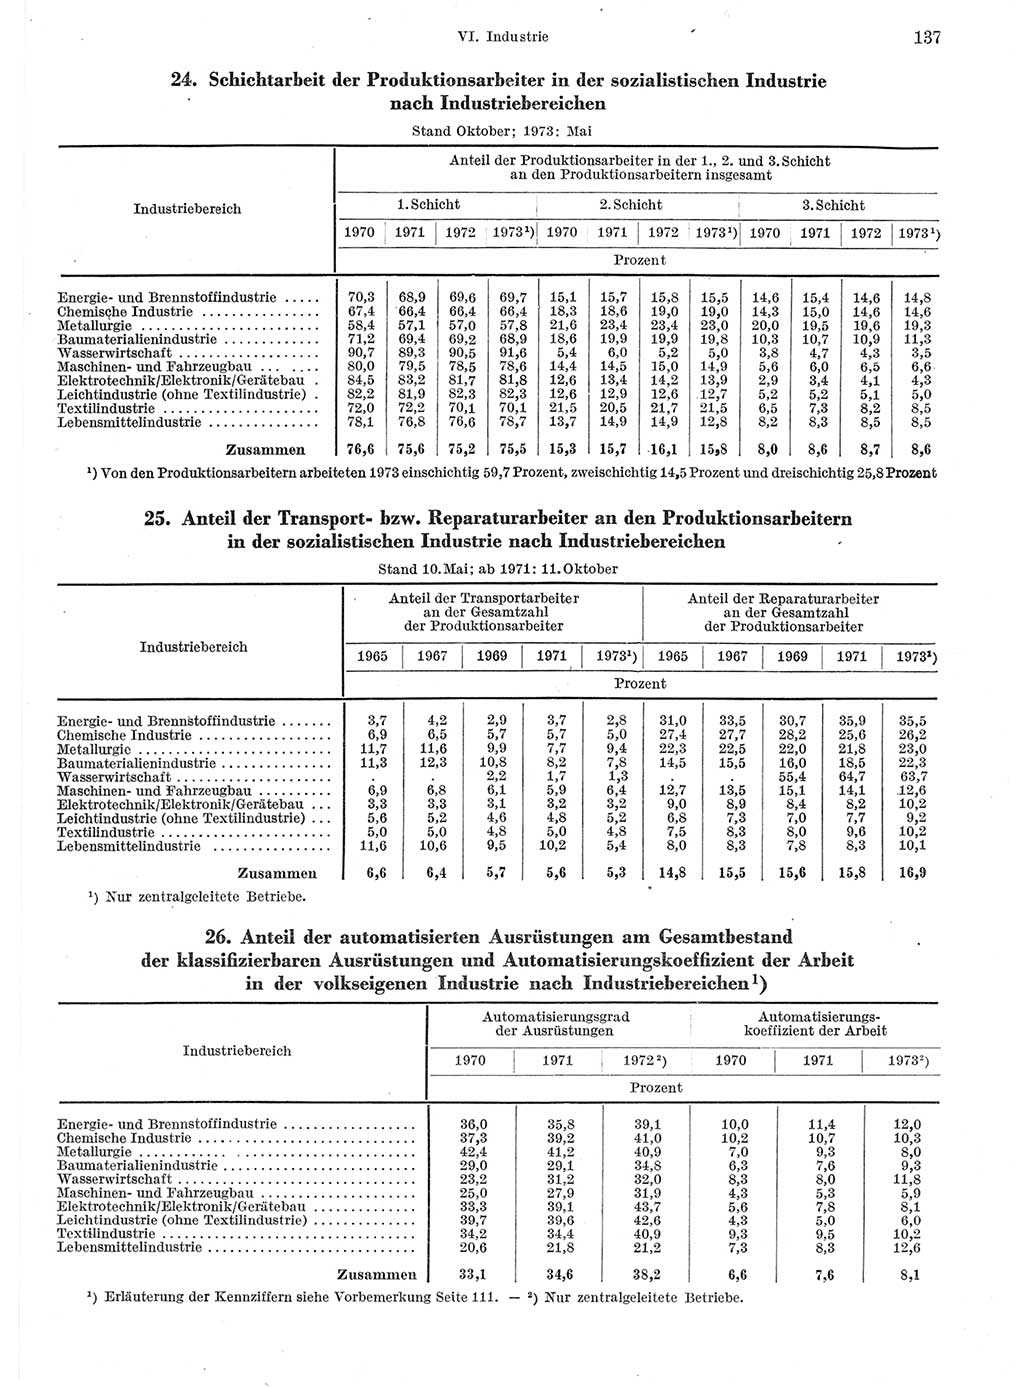 Statistisches Jahrbuch der Deutschen Demokratischen Republik (DDR) 1974, Seite 137 (Stat. Jb. DDR 1974, S. 137)